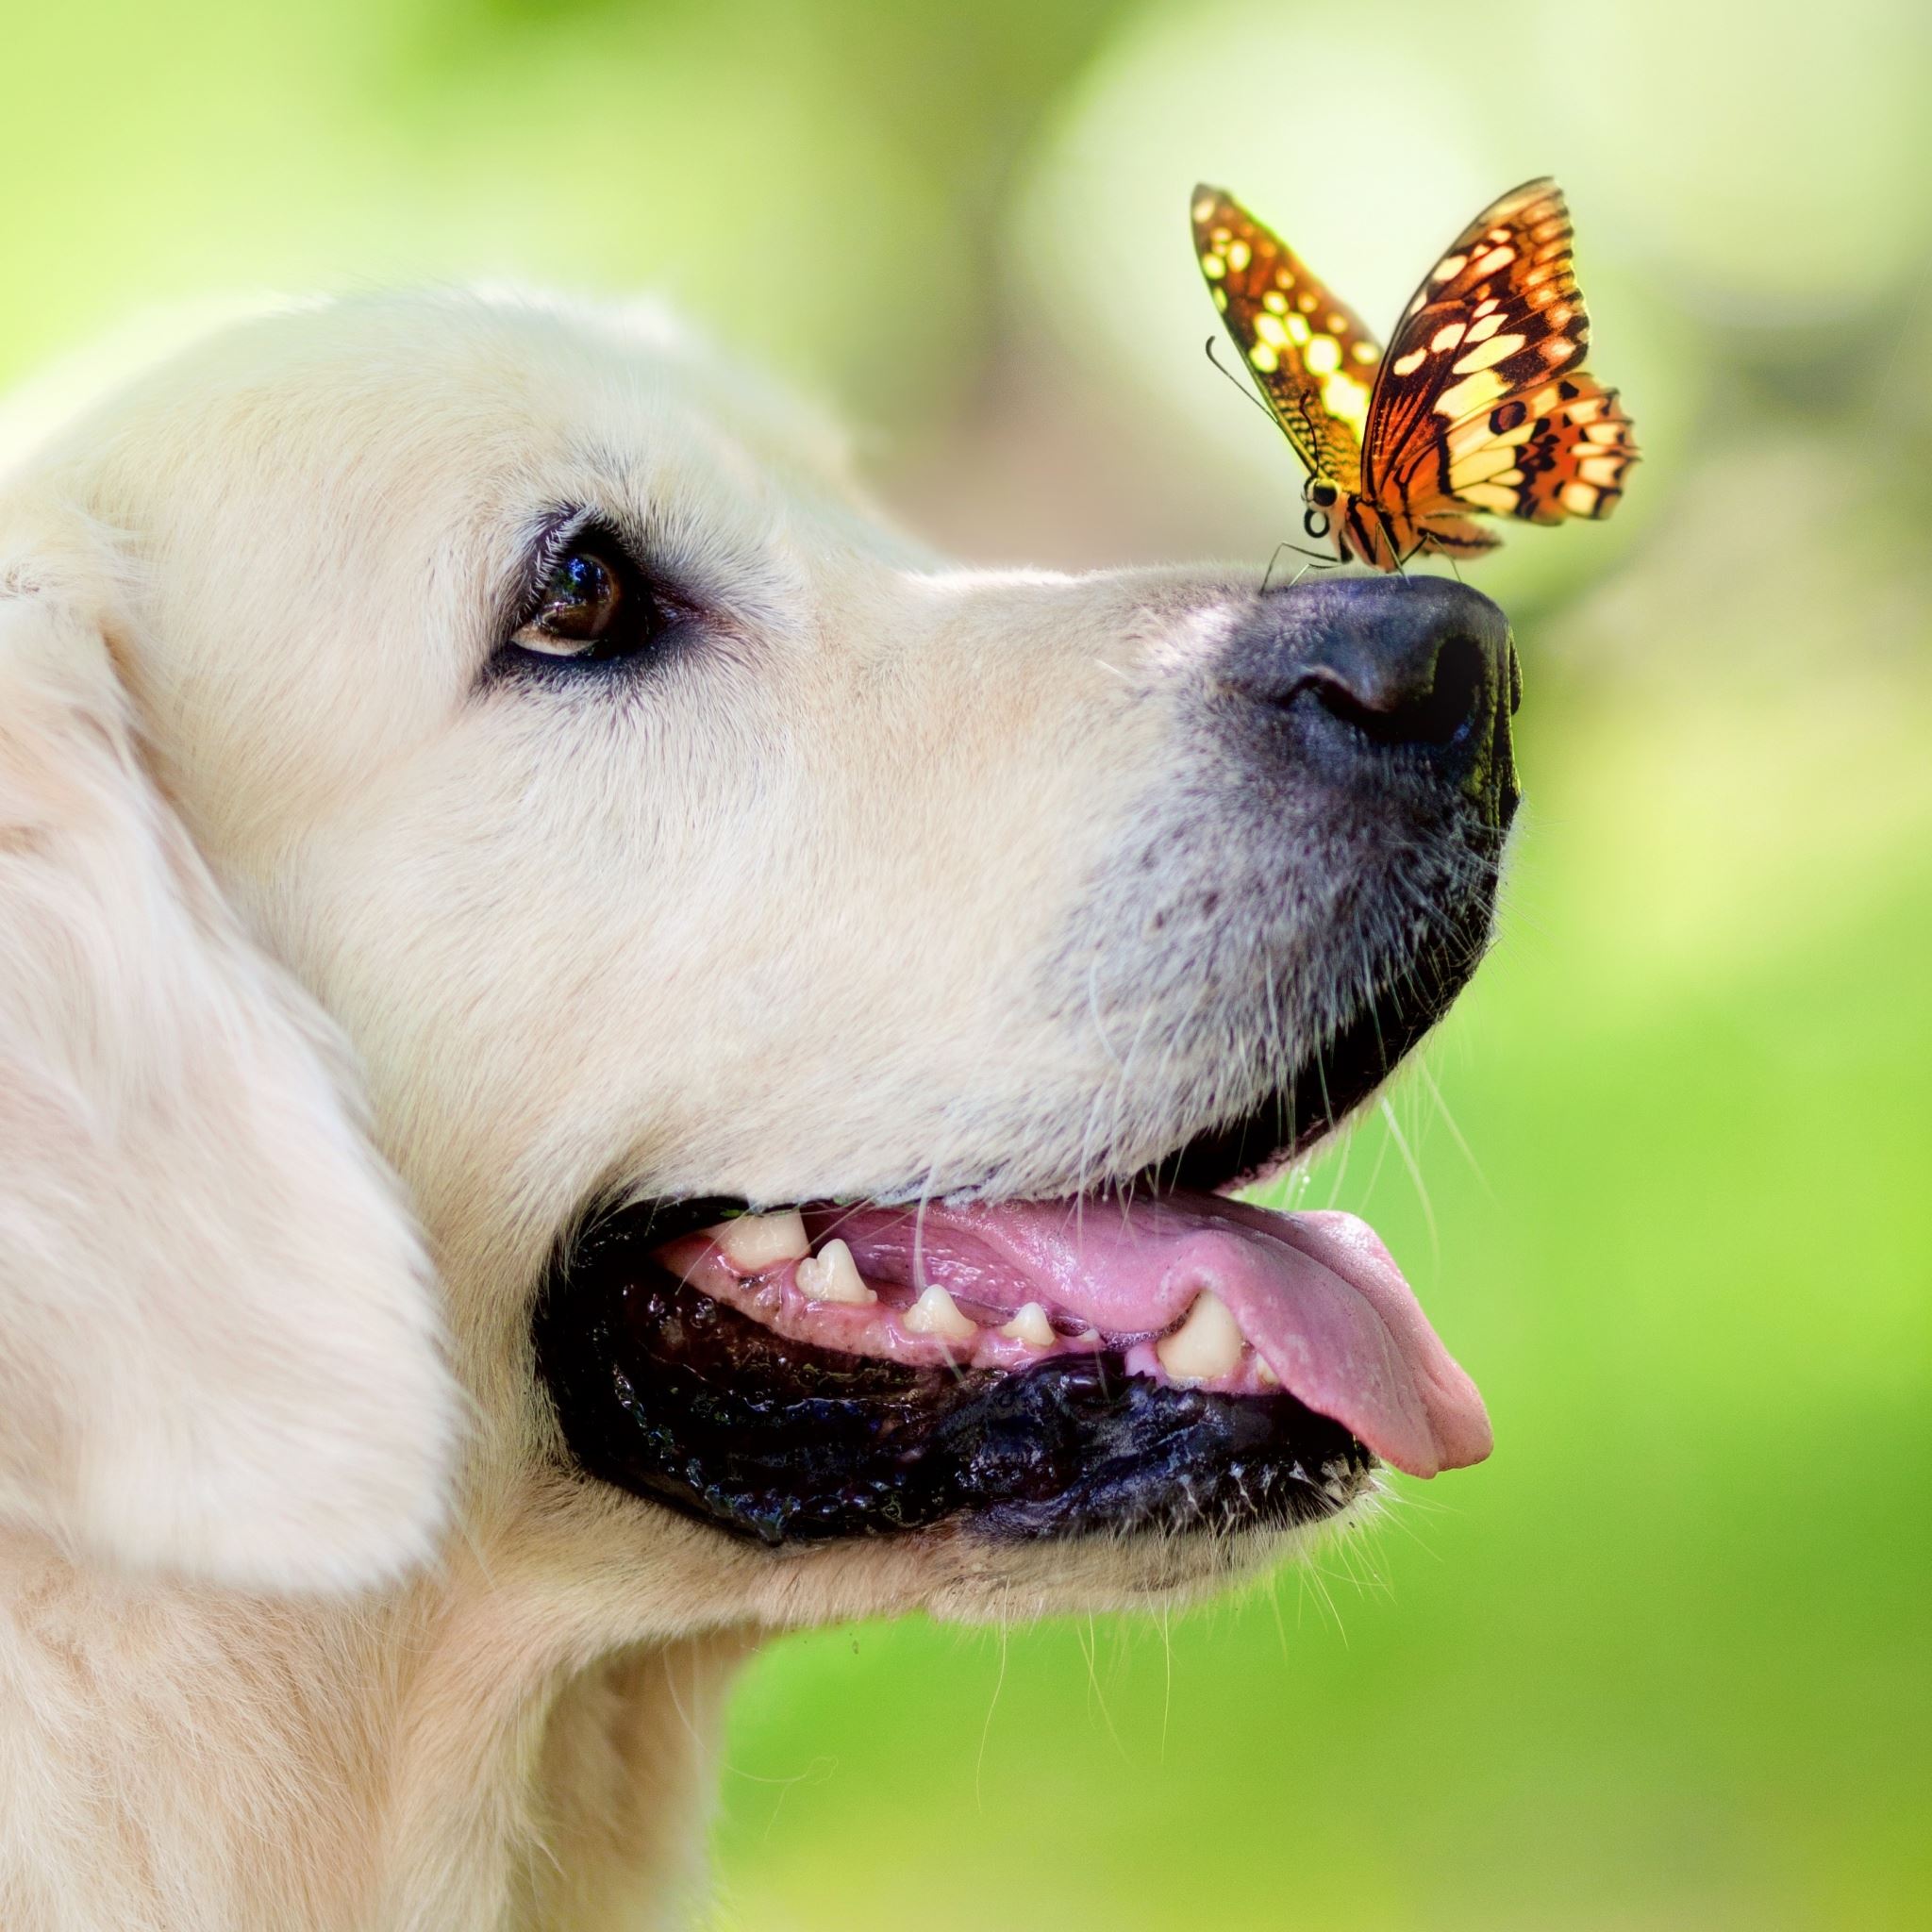 عکس پروفایل سگ دوست داشتنی و پروانه با کیفیت بالا